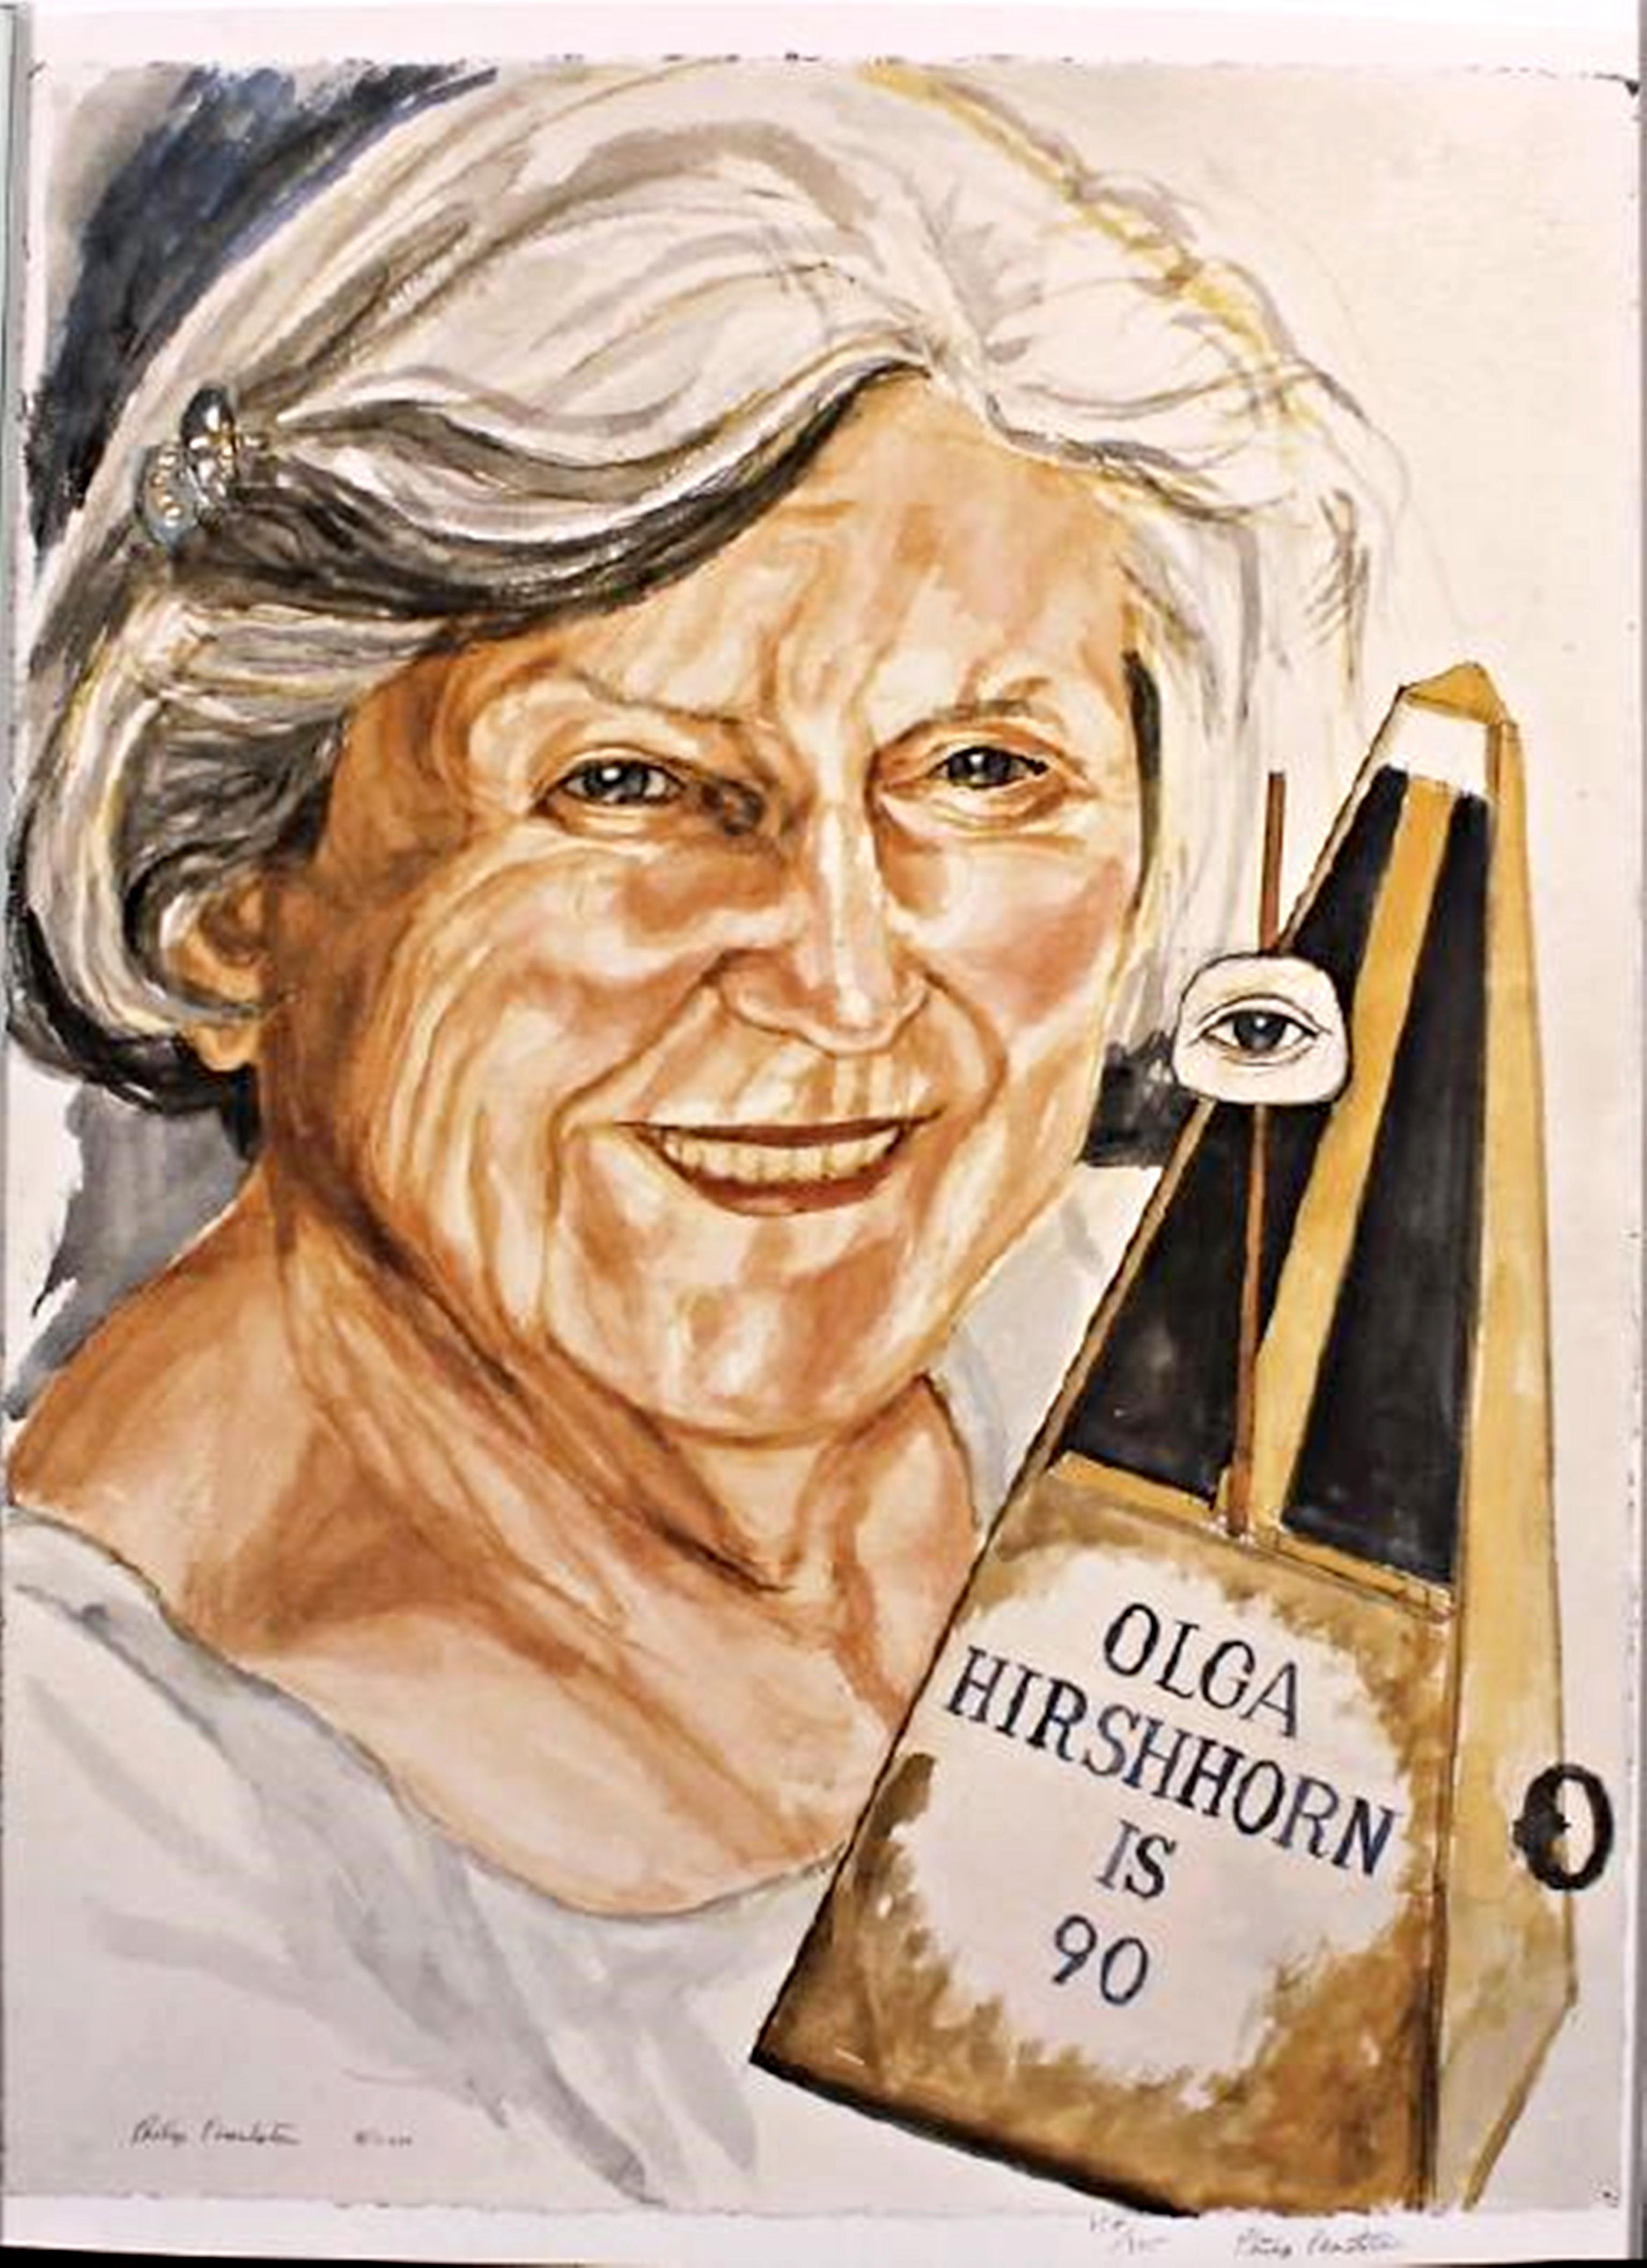 Olga Hirshhorn a 90 ans, l'artiste réaliste de premier plan, feu Philip Pearlstein